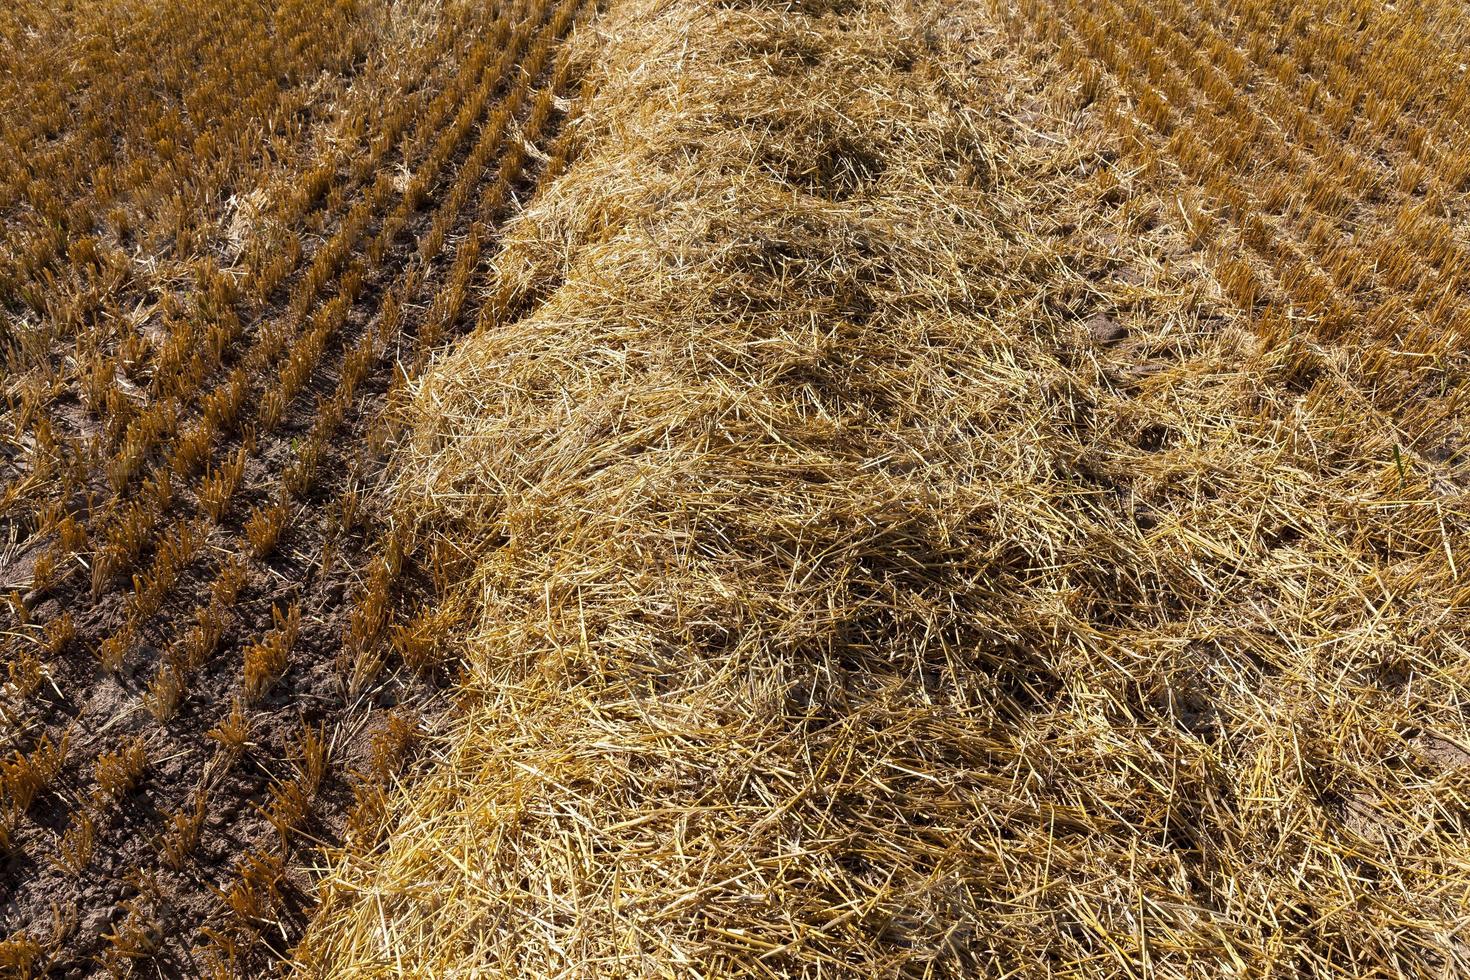 landbouwveld met stekelig stro van tarwe foto